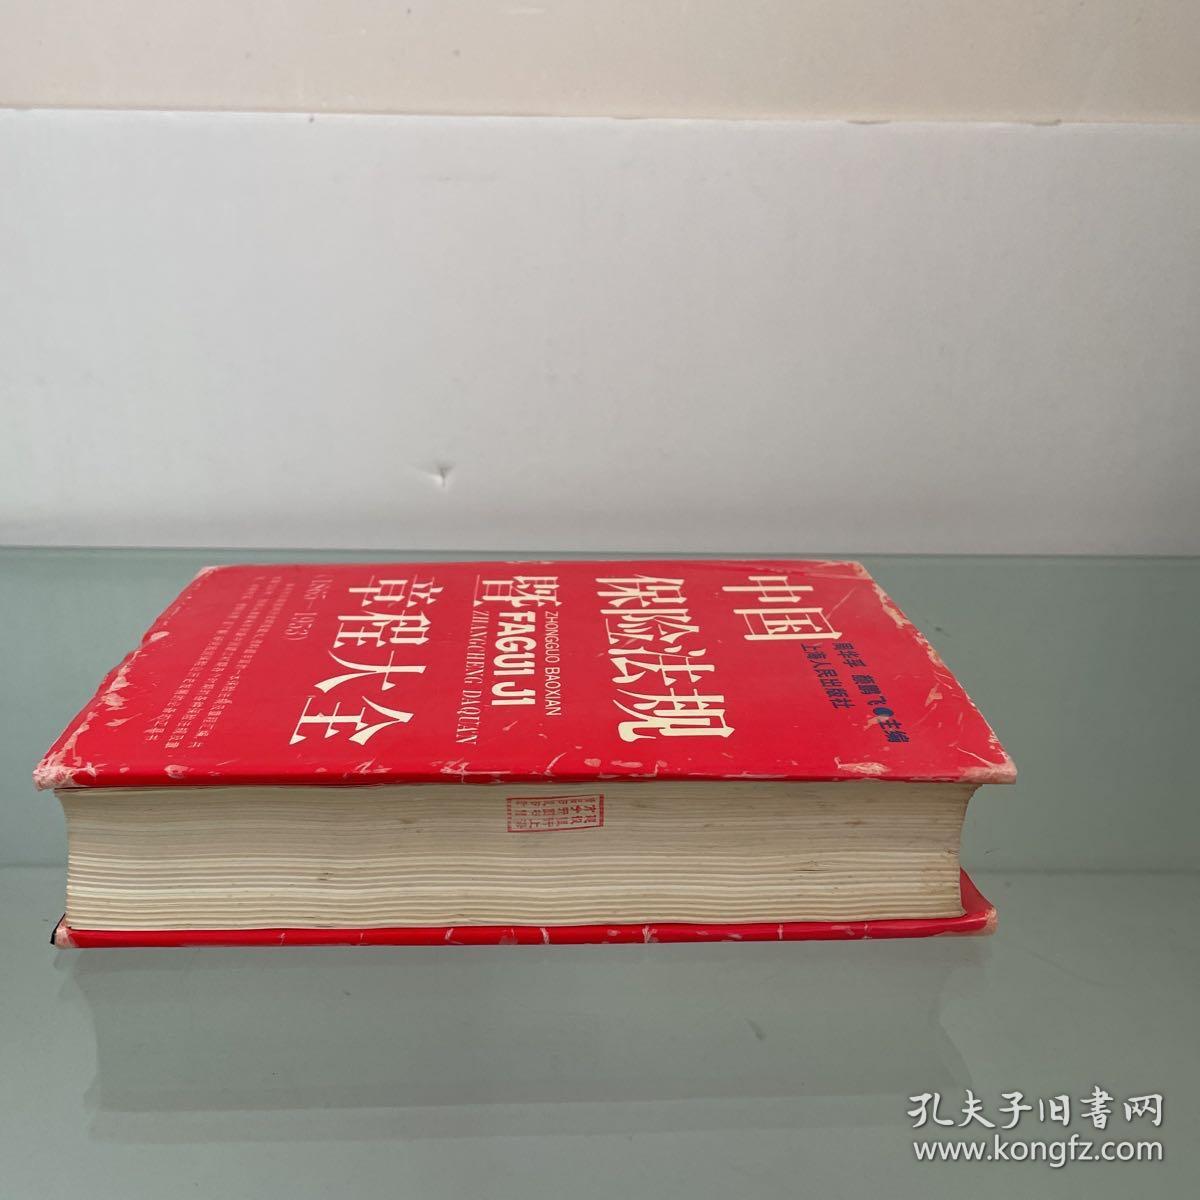 中国保险法规暨章程大全（1865~1953.）